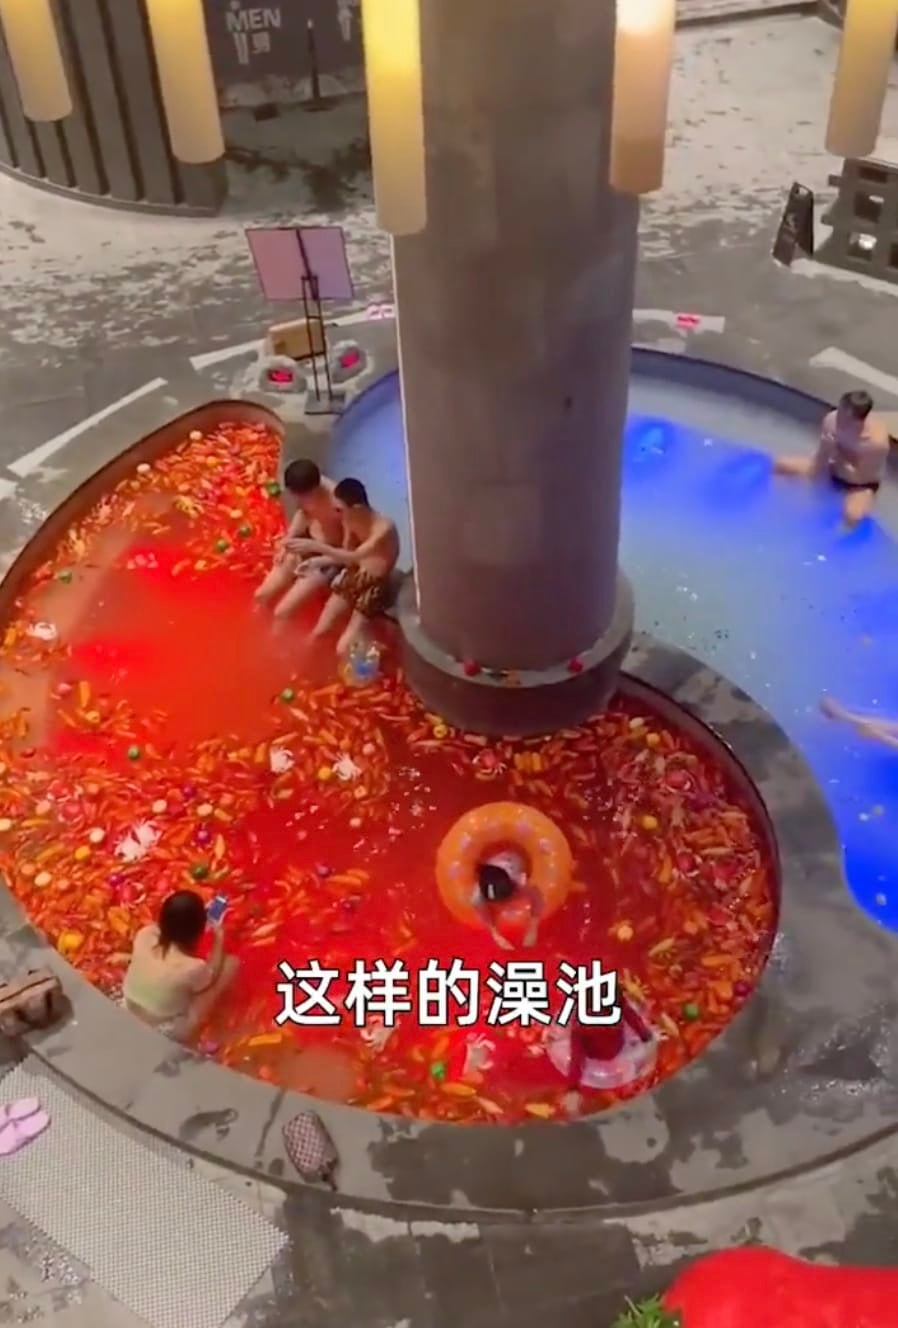 บ่อน้ำพุร้อนออนเซ็นในจีน หม่าล่าหม้อไฟ